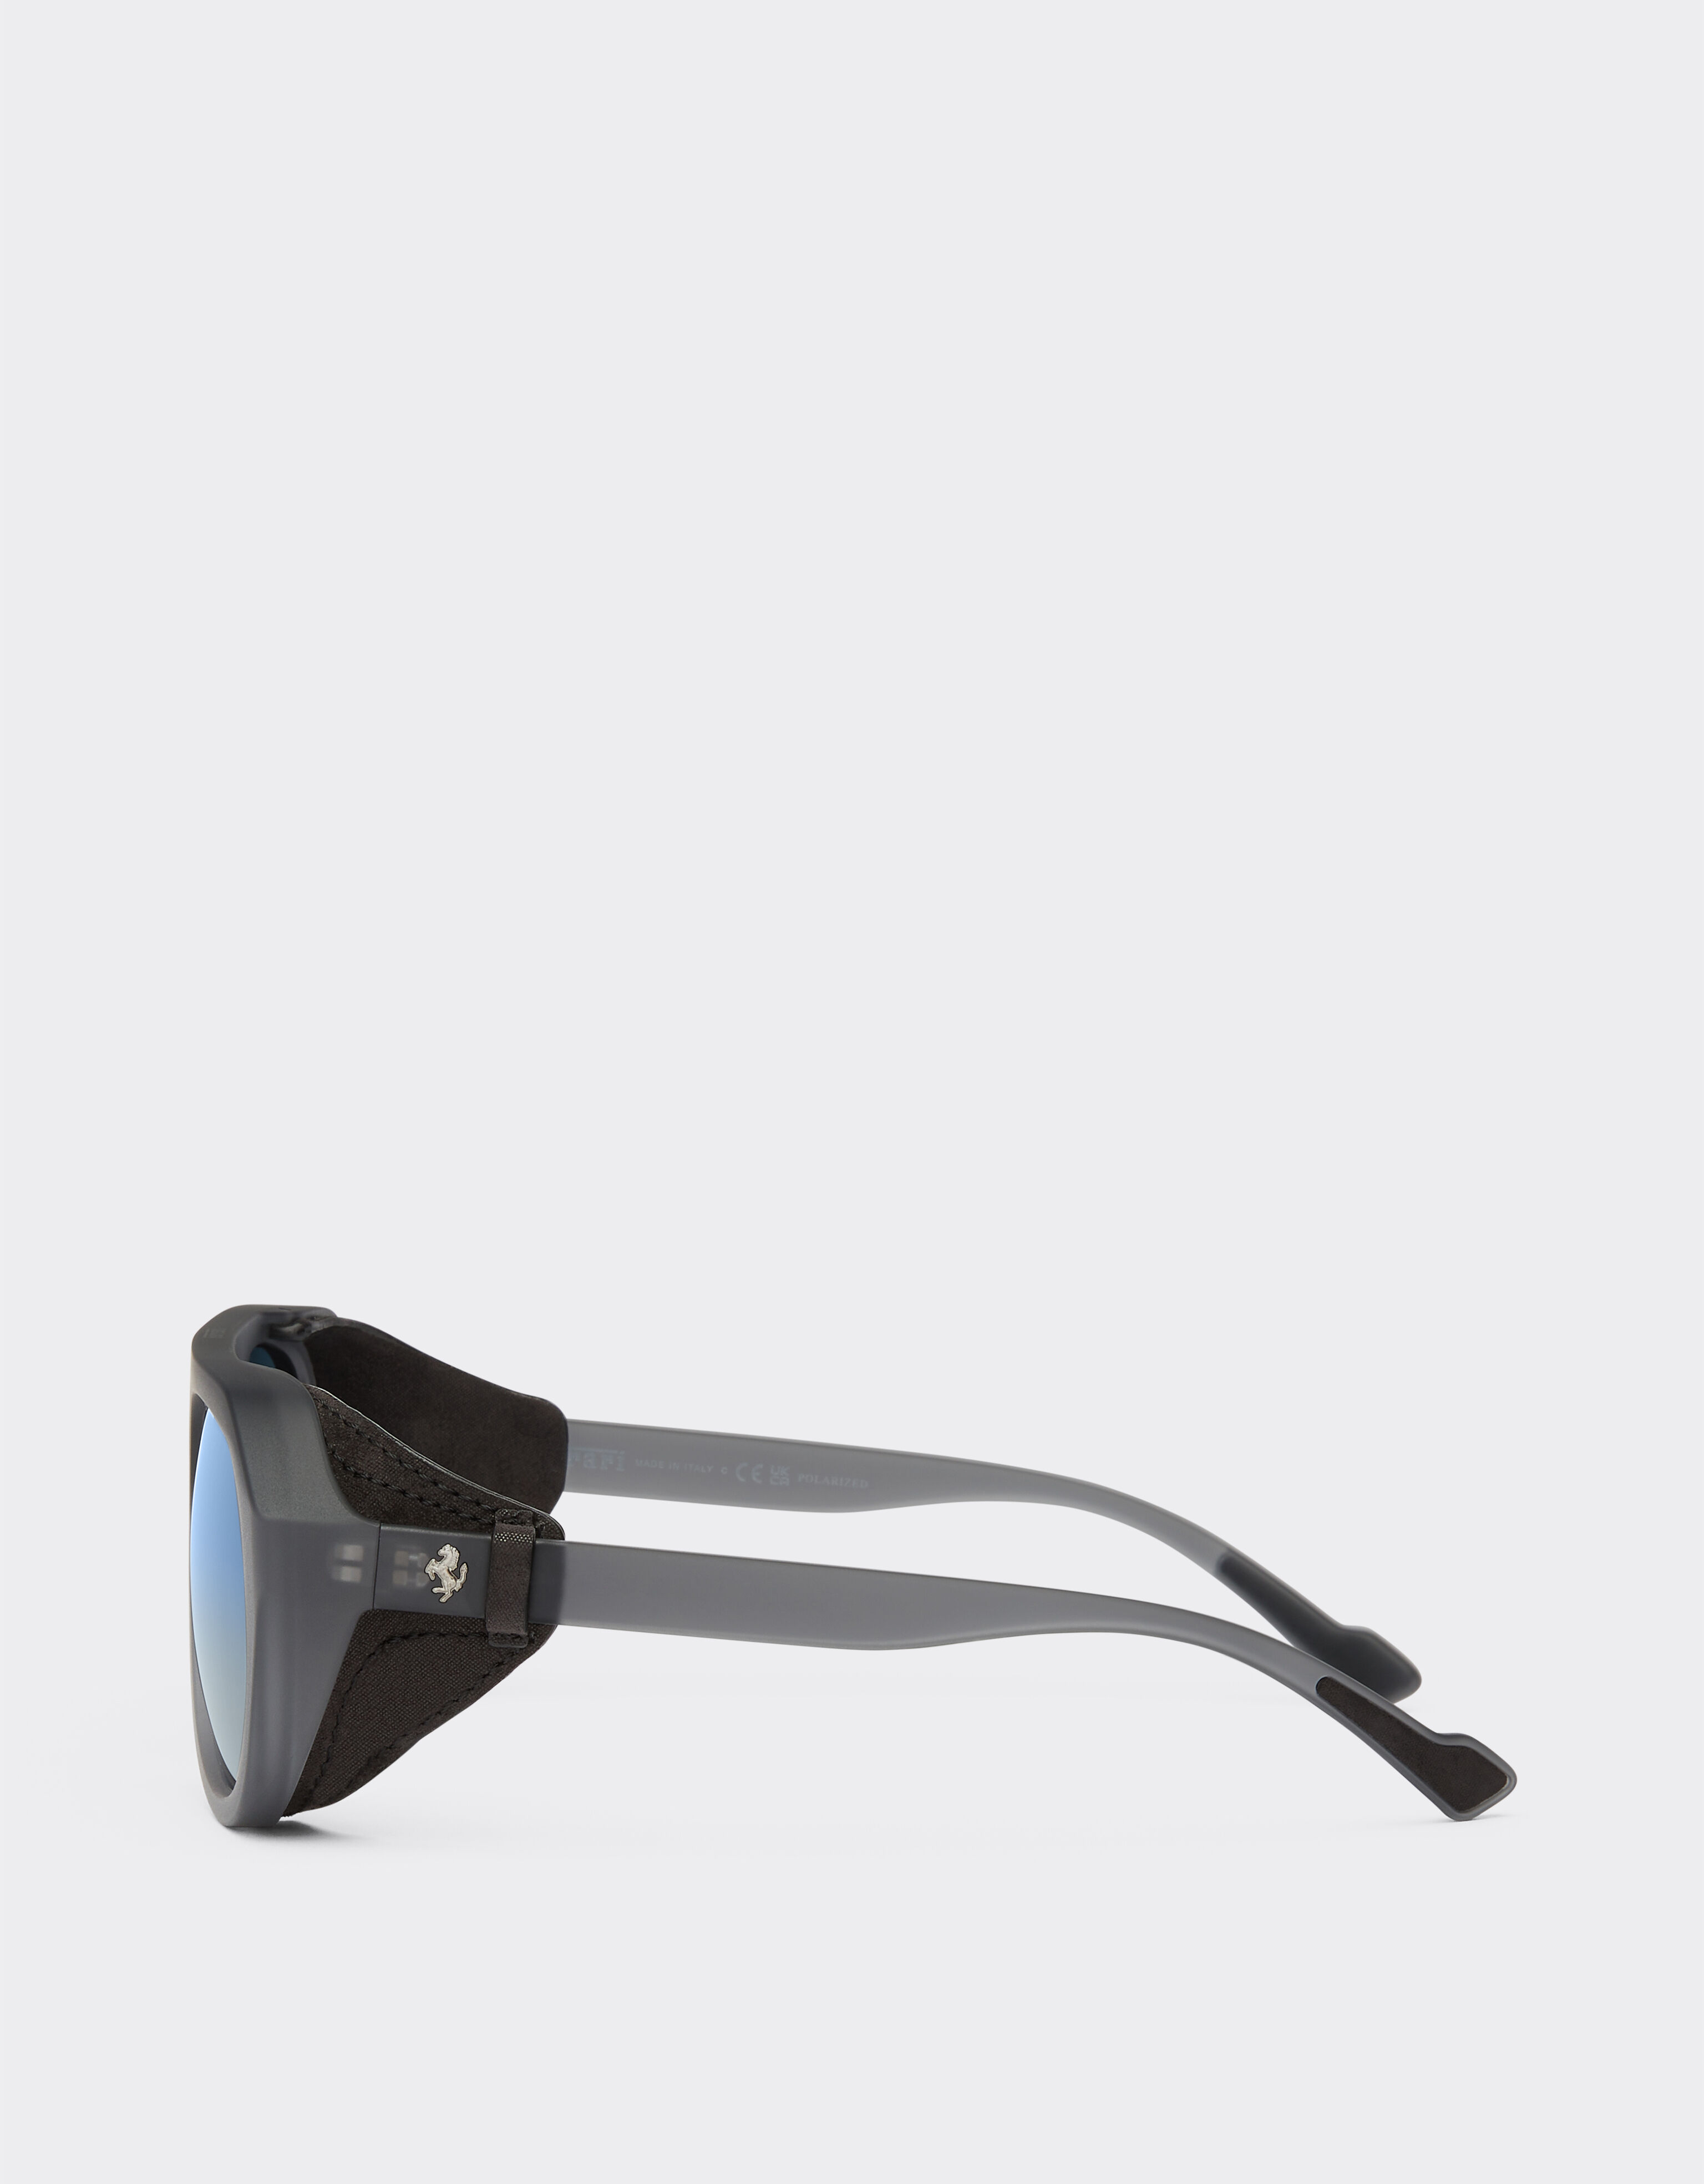 Ferrari Ferrari matt grey sunglasses with leather details and polarised lenses Ingrid F1255f